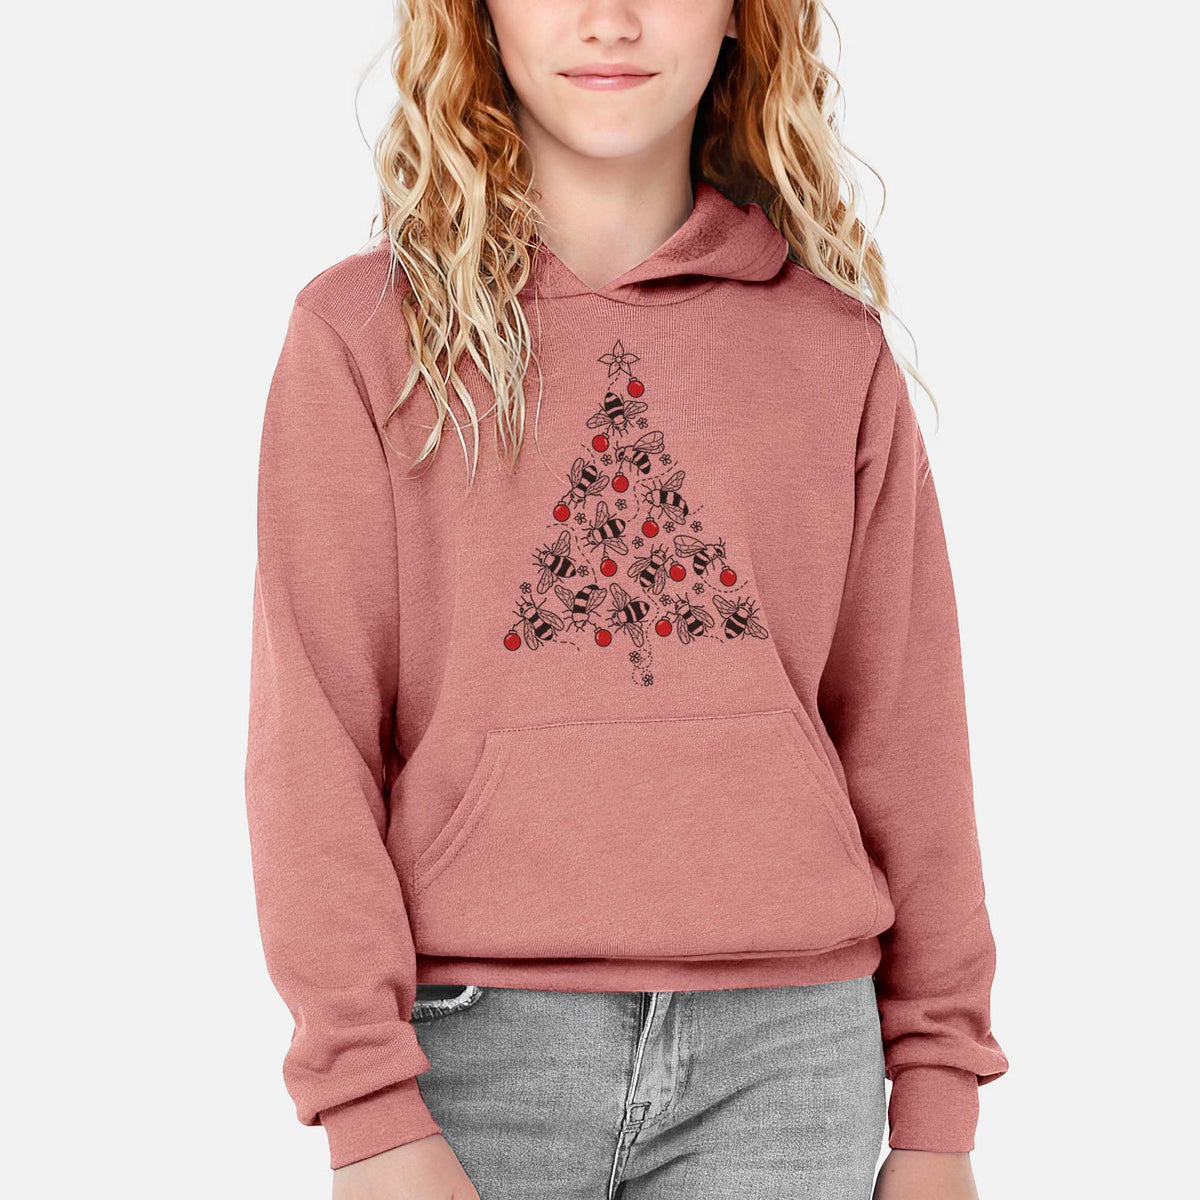 Christmas Tree of Bees - Youth Hoodie Sweatshirt